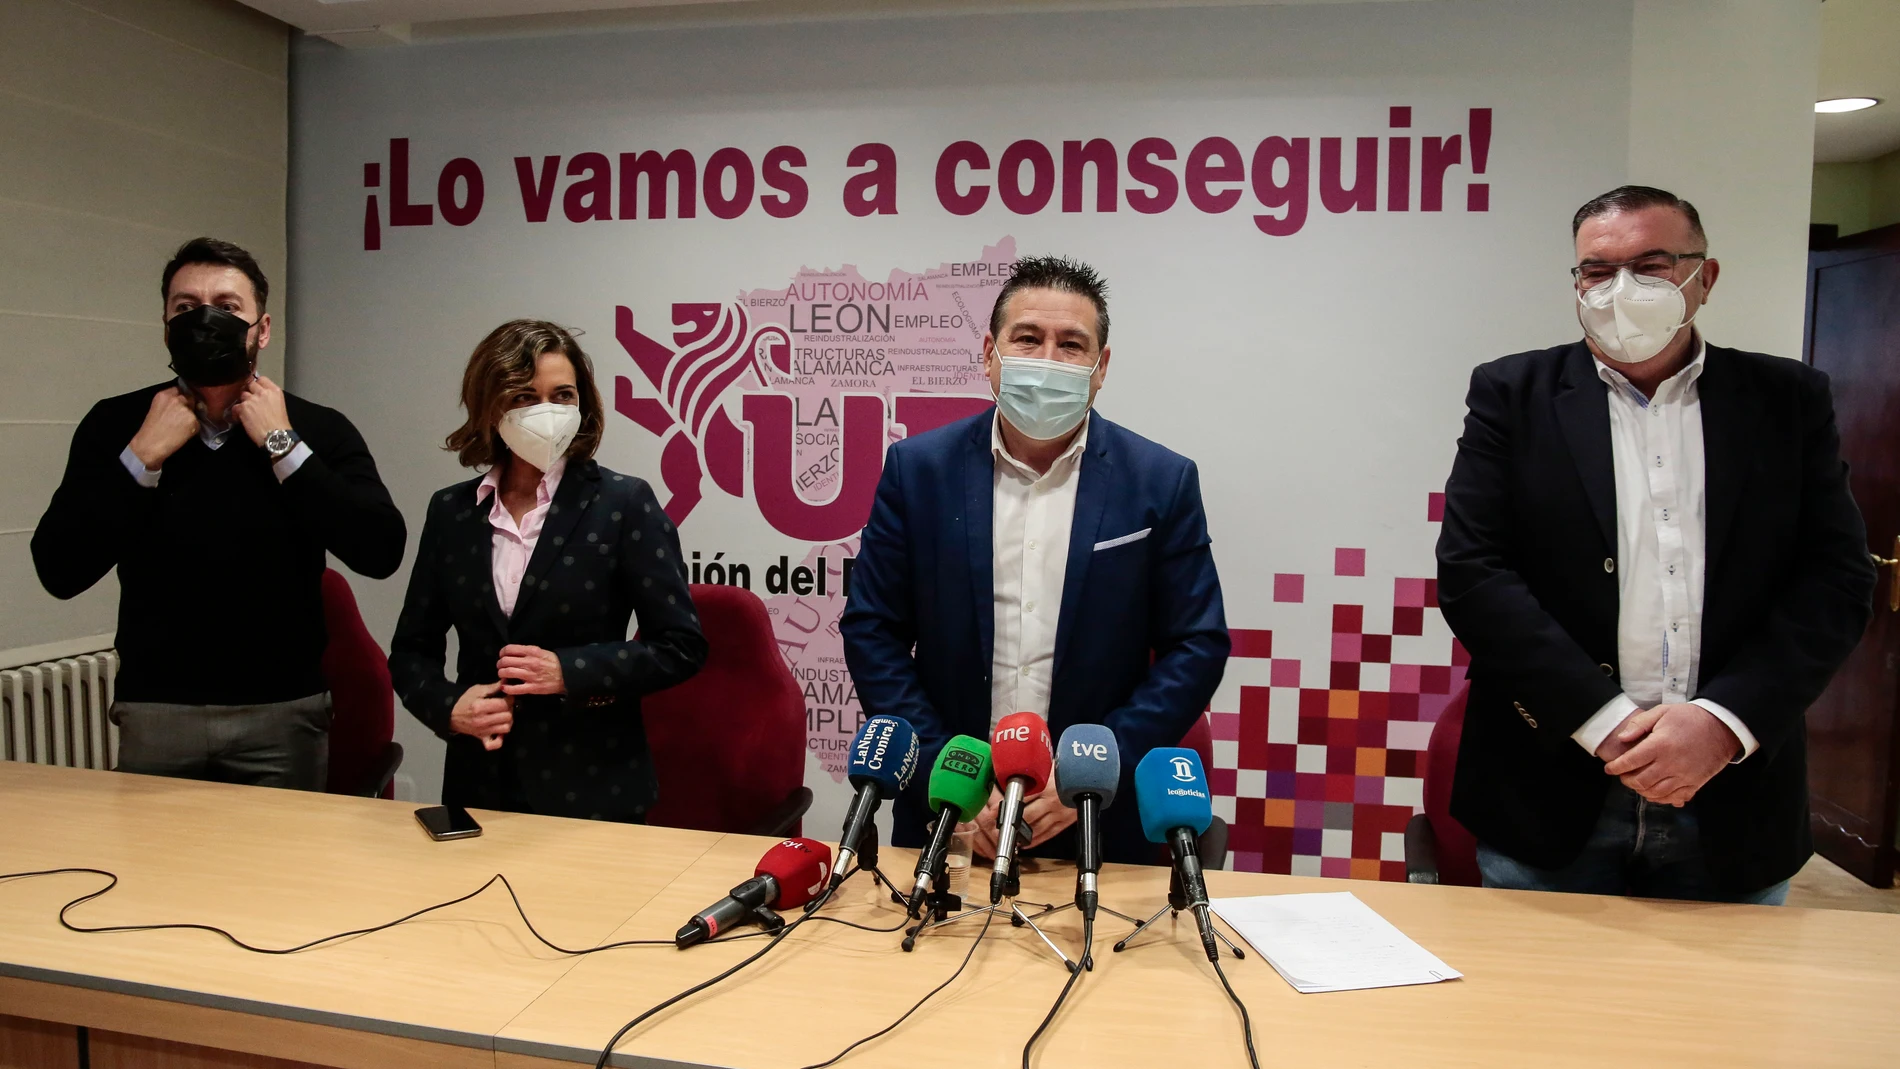 El candidato a las Cortes de Castilla y León, Luis Mariano Santos, acompañado por miembros de su candidatura, presenta oficialmente la lista electoral con la que concurrirá a los comicios electorales del 13 de febrero